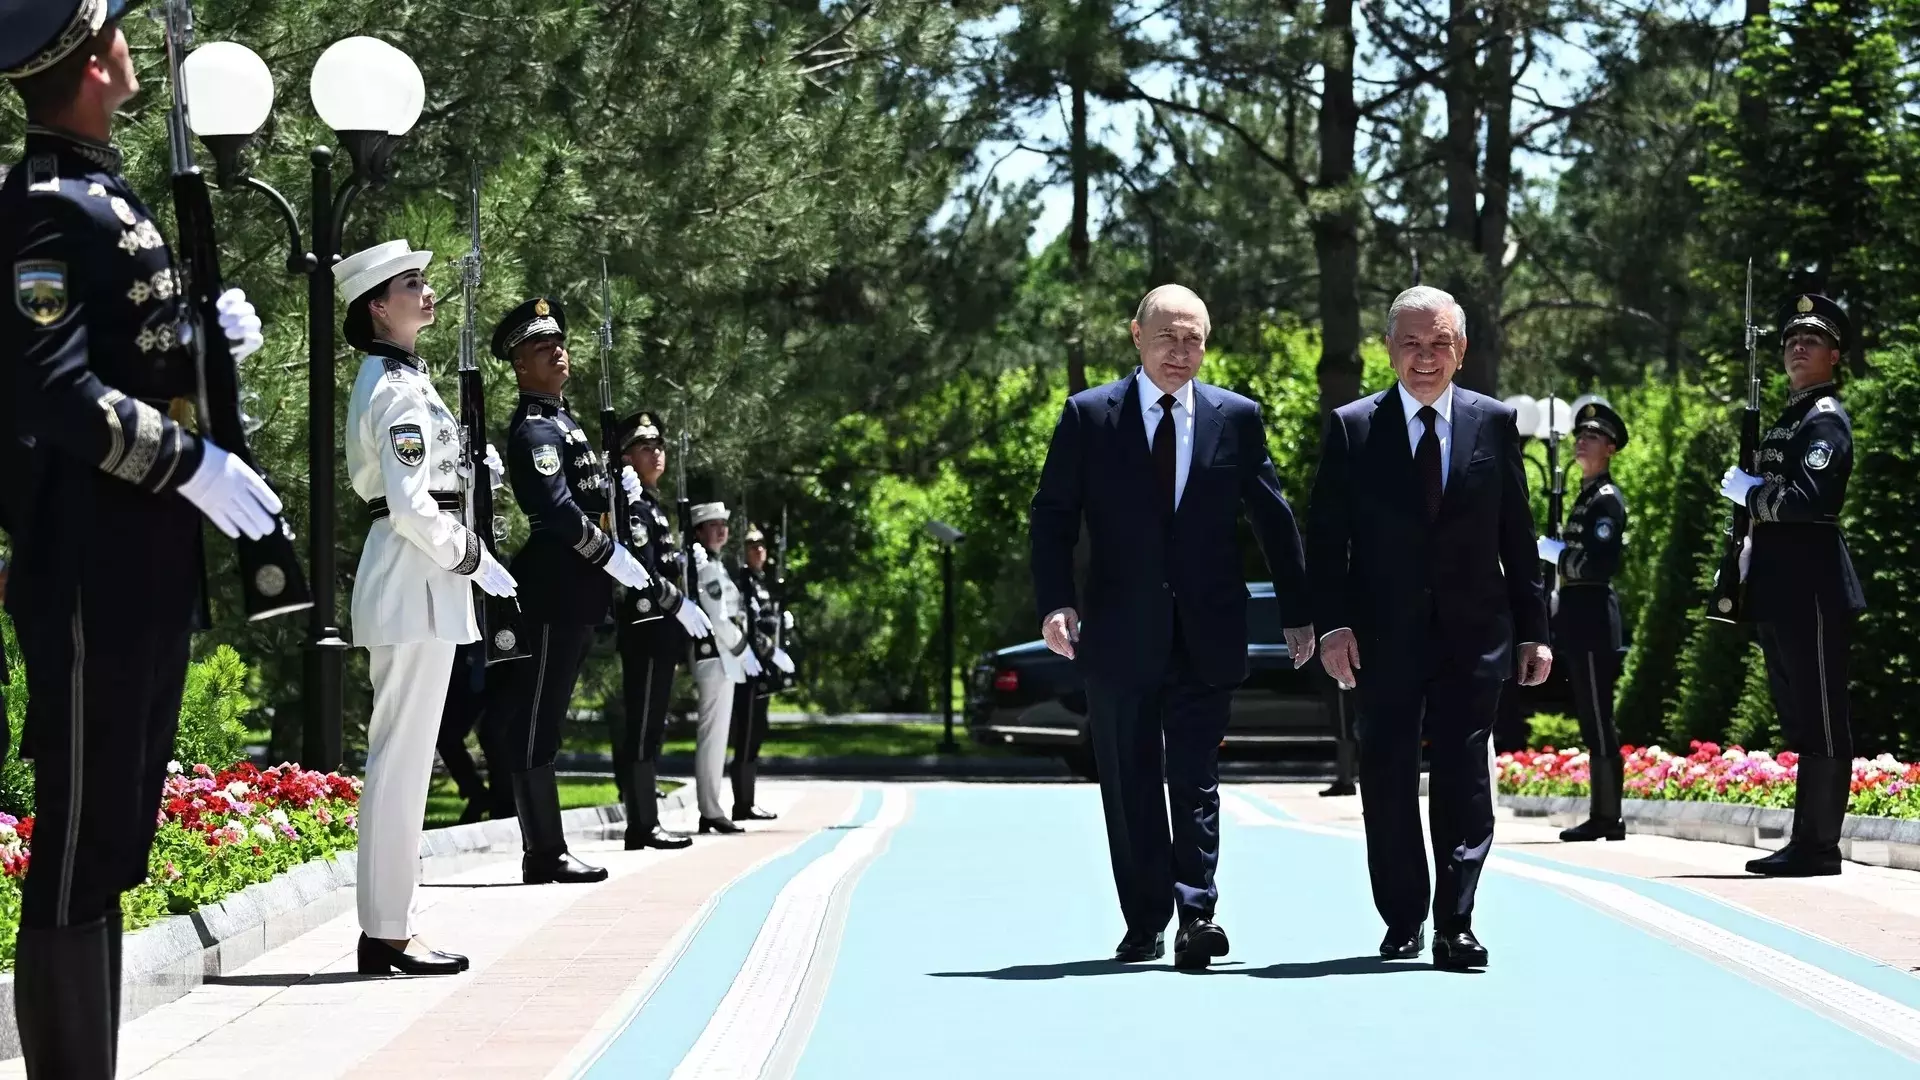 Визит в прошлое: в Ташкенте российская делегация обсуждает не санкции, а энергетику